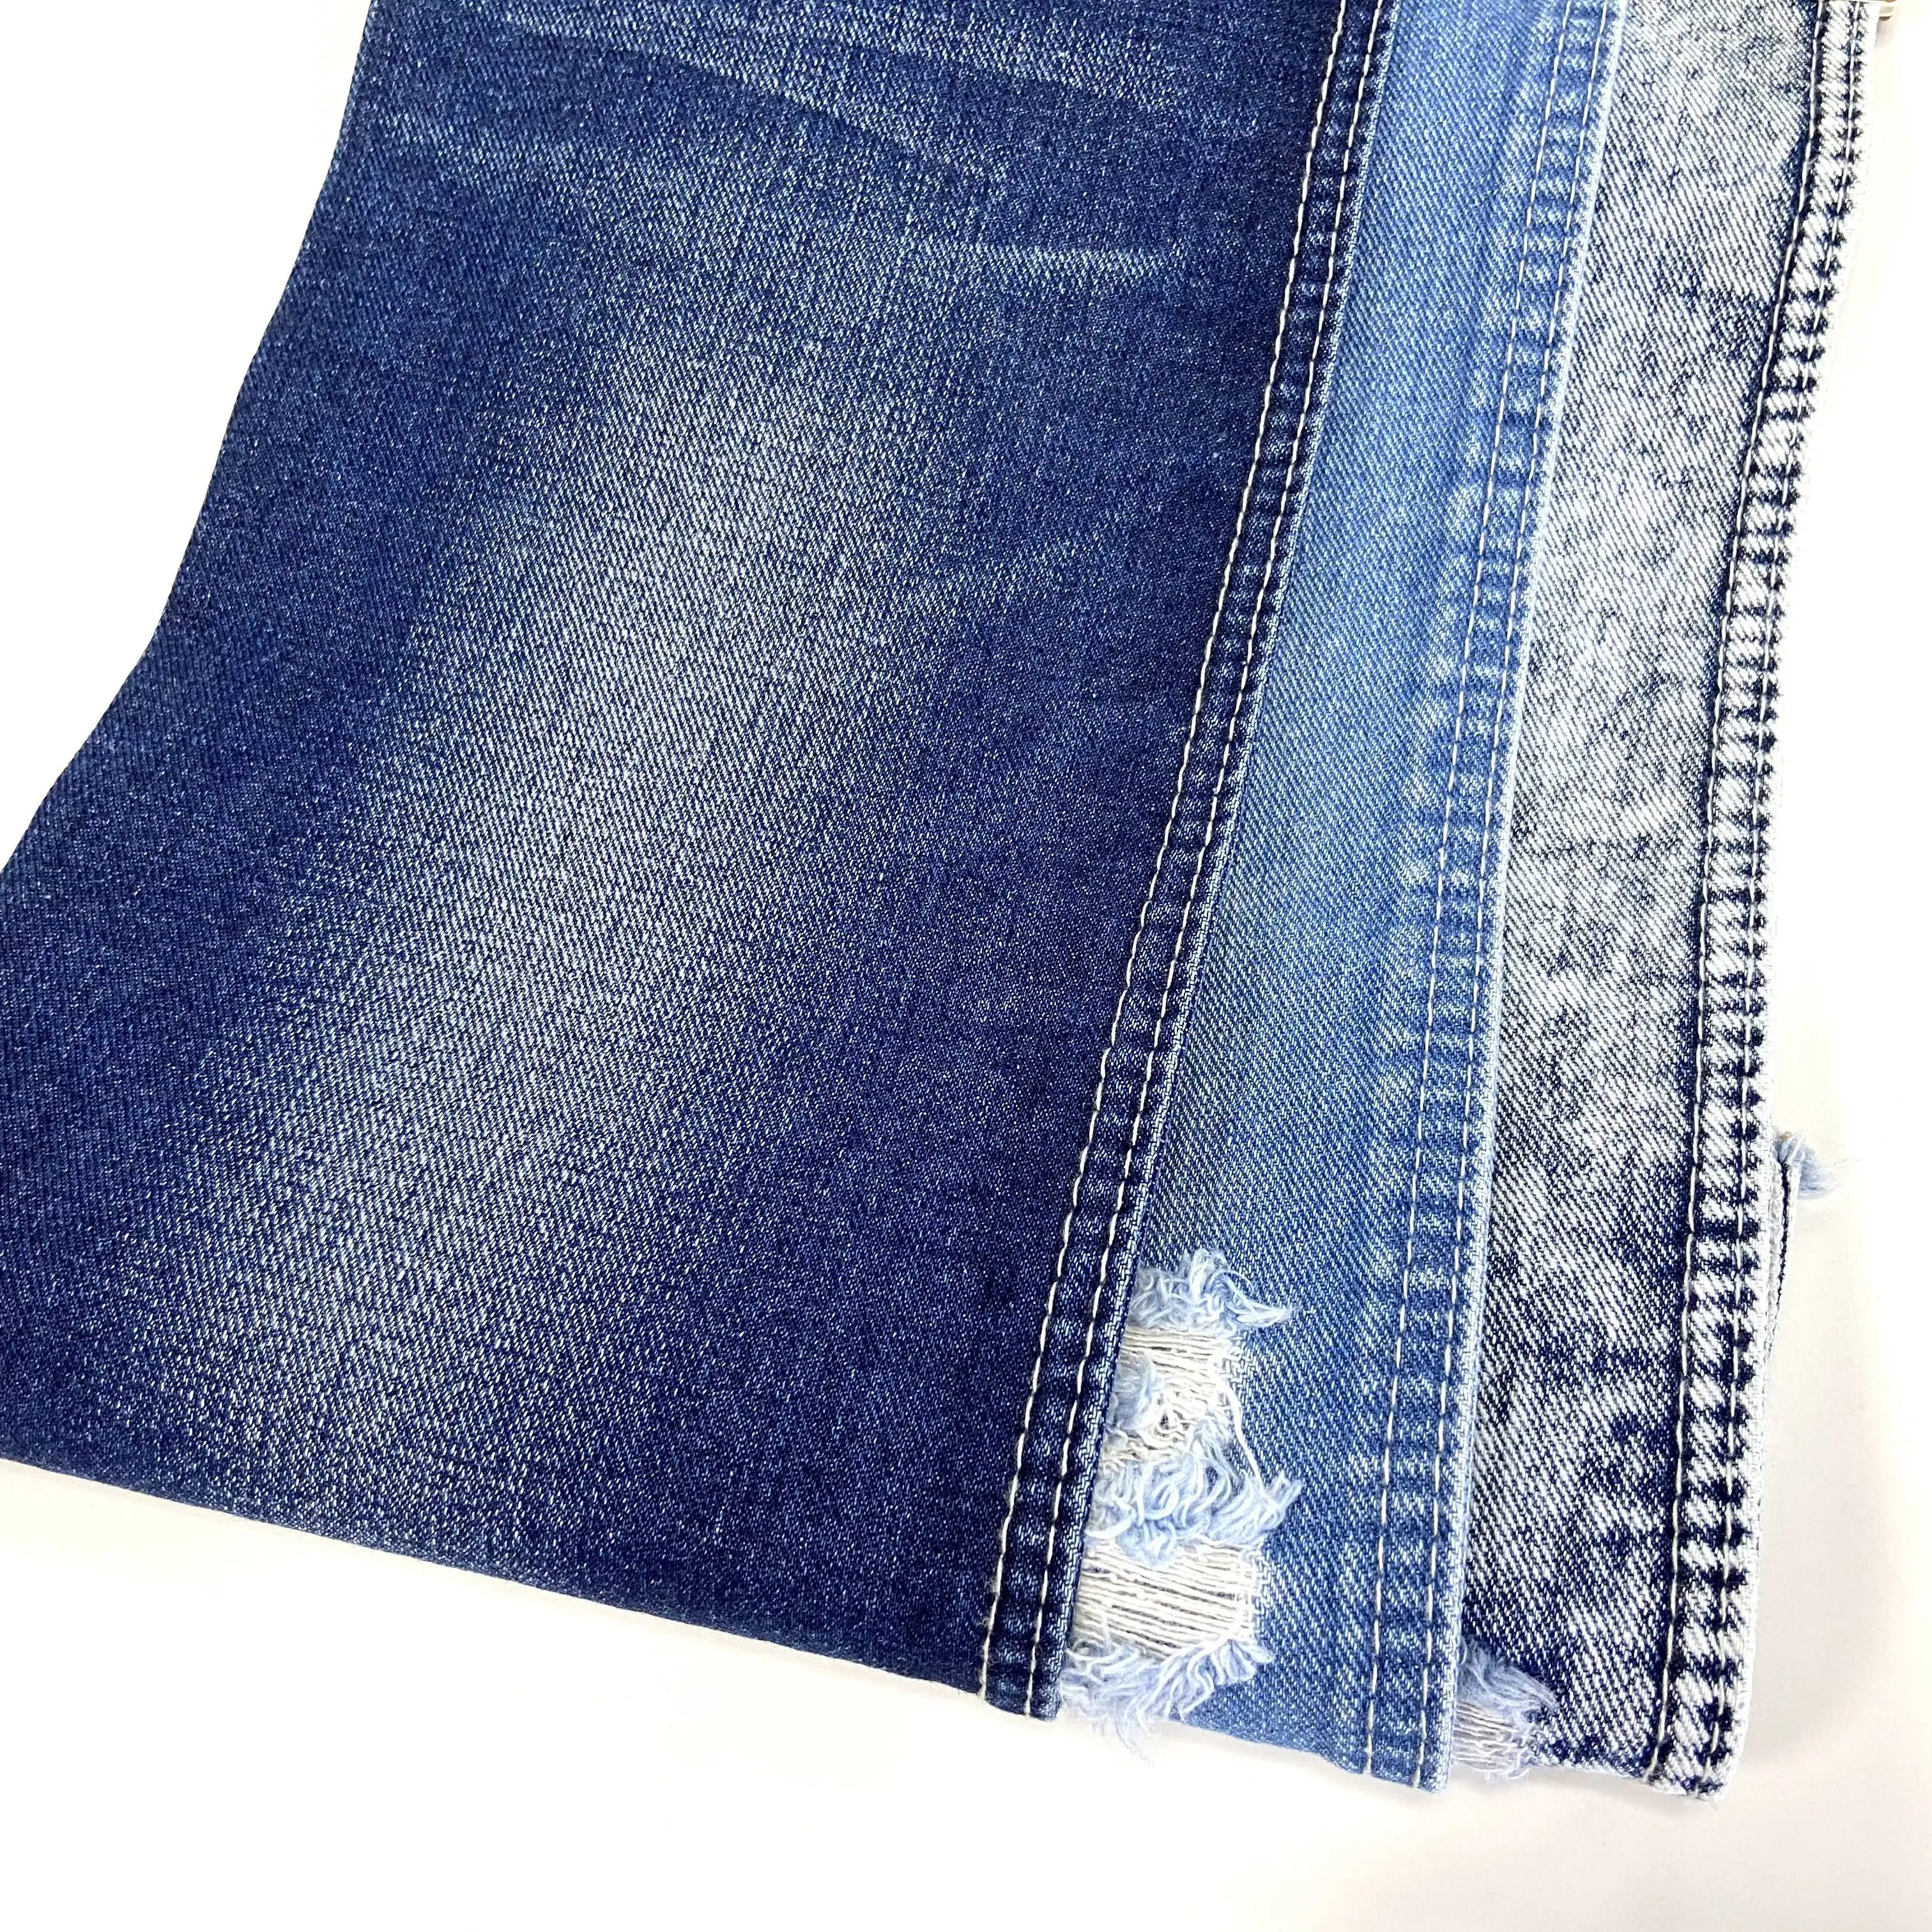 Artikel 9775W 405G 70/71 ''Baumwolle Spandex im gesicherten Stil Urban Star Jeans Diesel Jeans Stoff